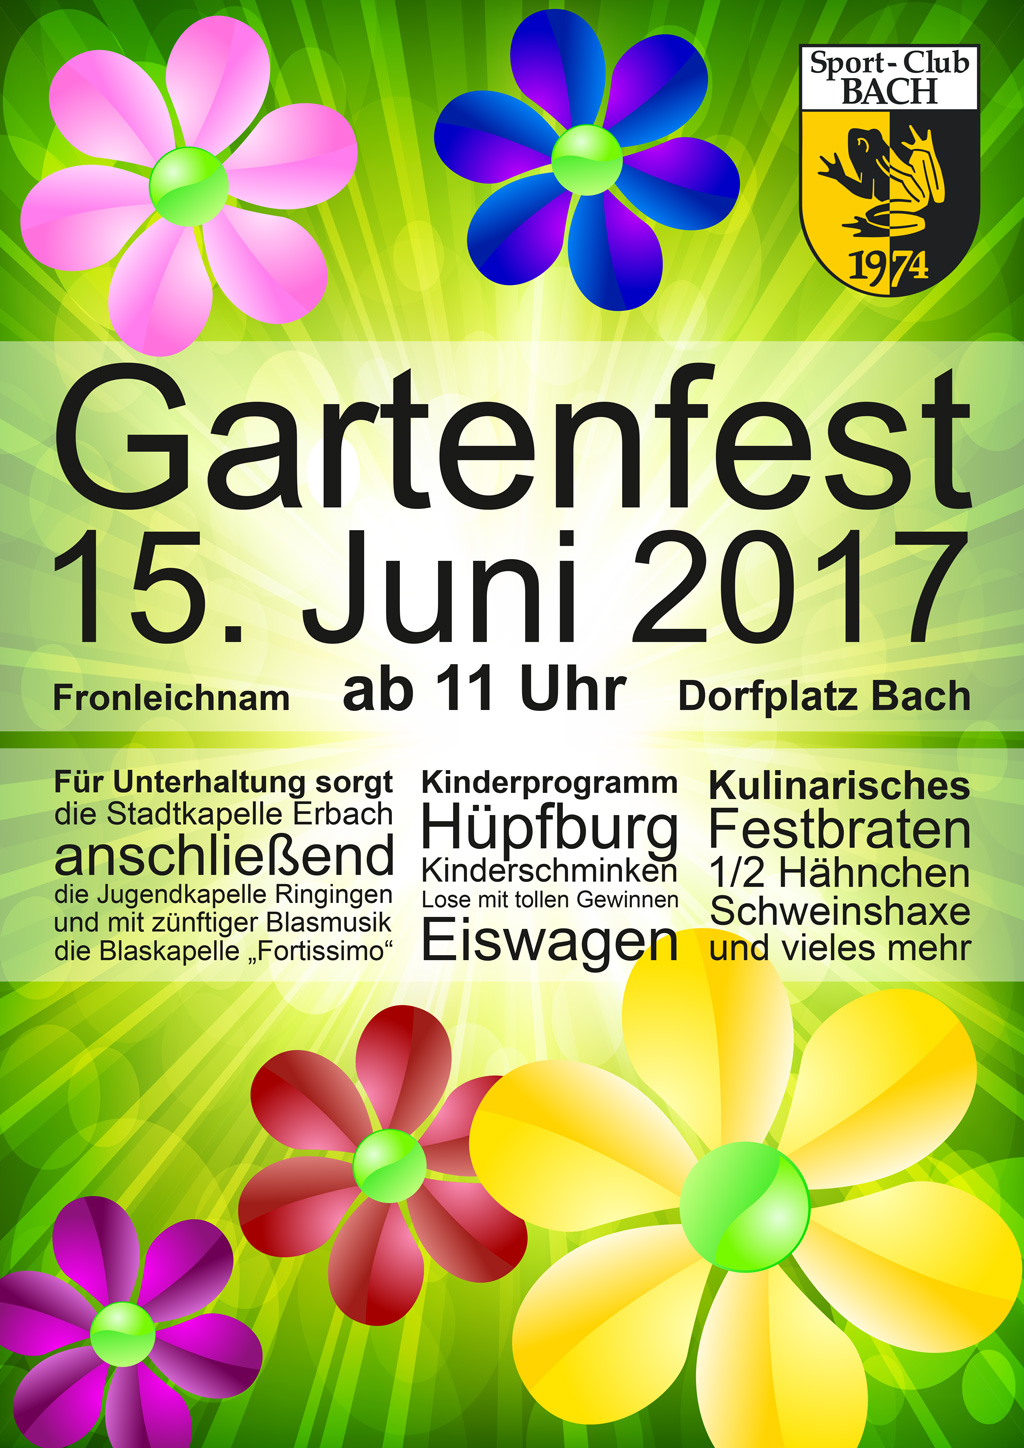 Gartenfest am 15. Juni 2017